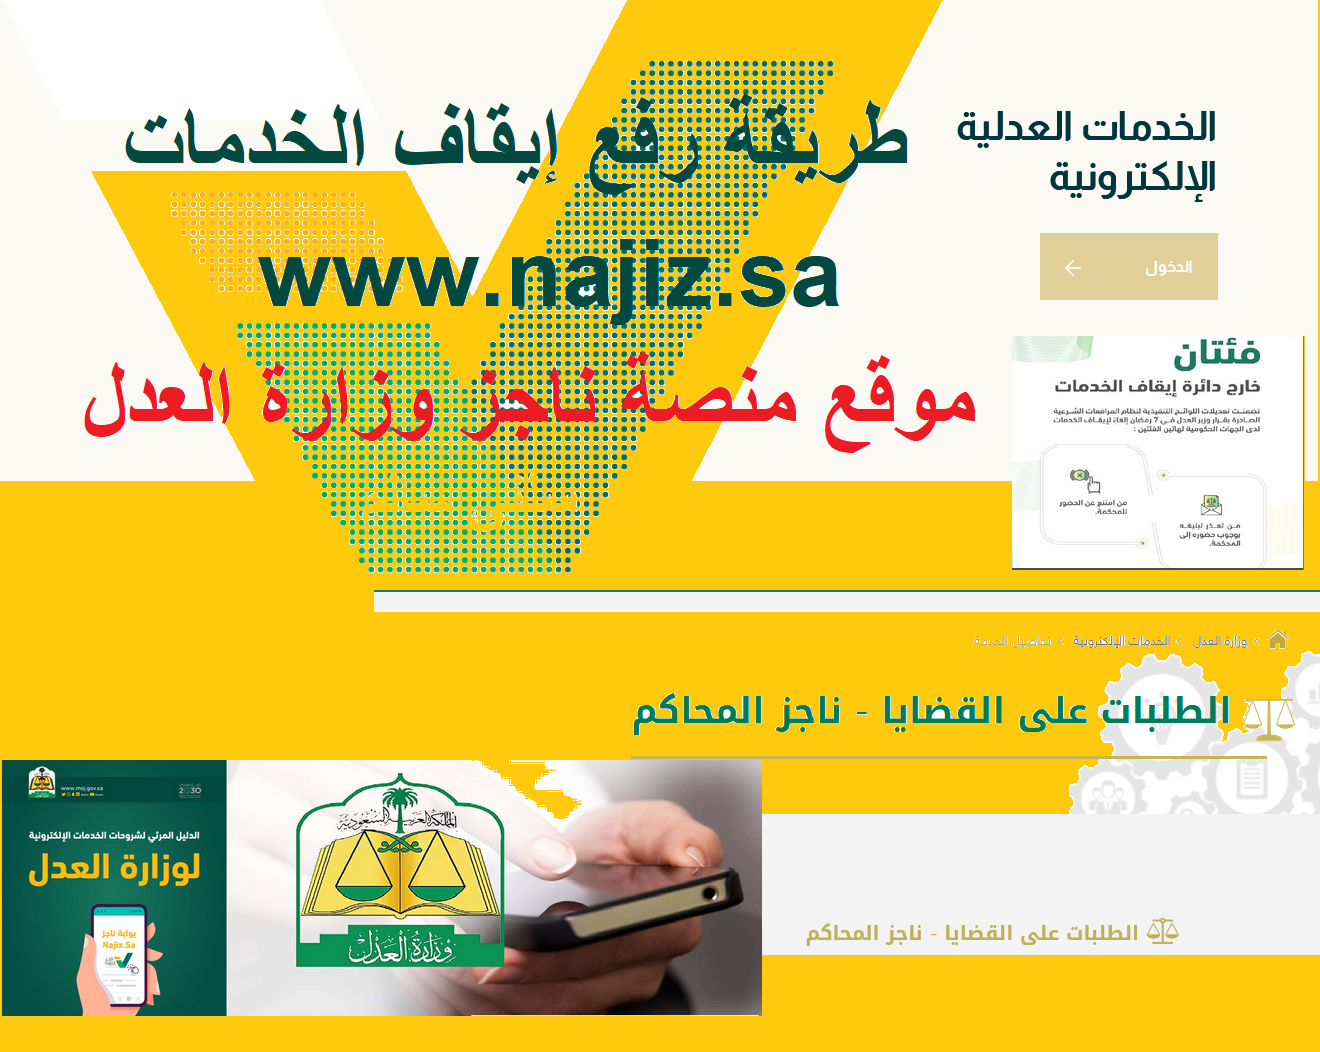 إنجاز رفع إيقاف الخدمات البنكية "ناجز najiz.sa" طريقة استرجاع خدمات موقوفة إلكترونياً